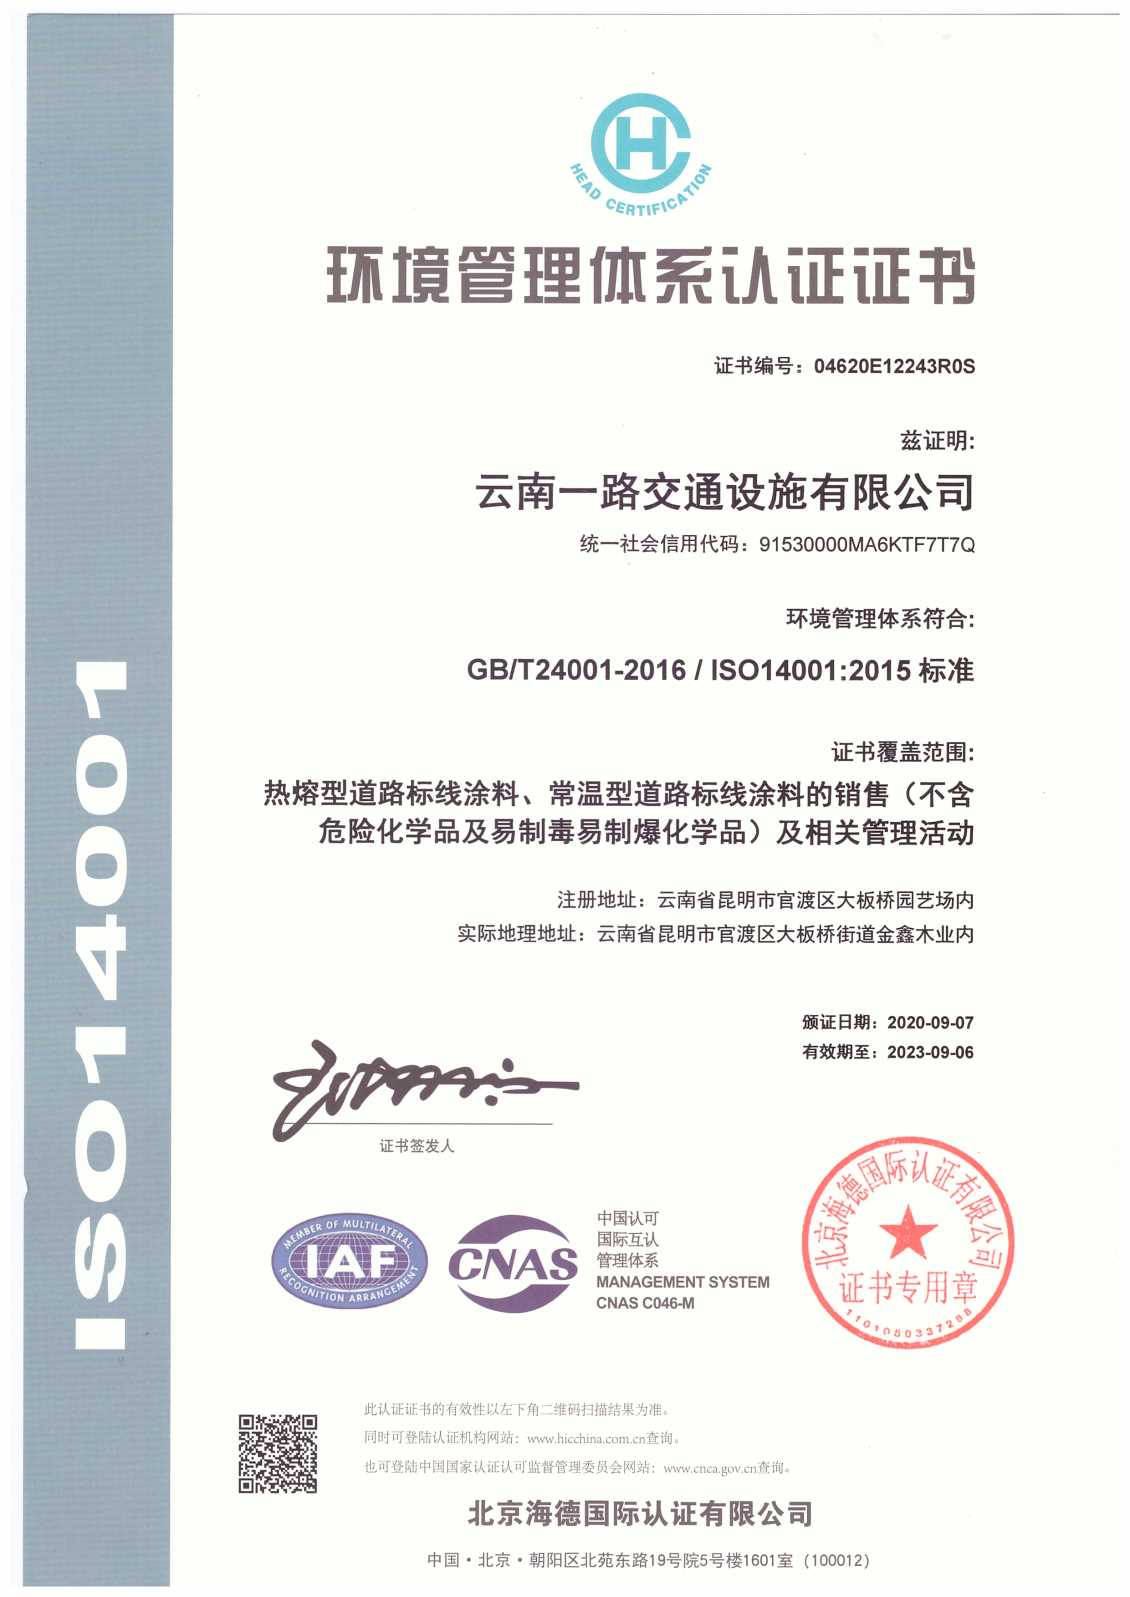 2020年通过环境管理体系ISO14001:2018标准认证